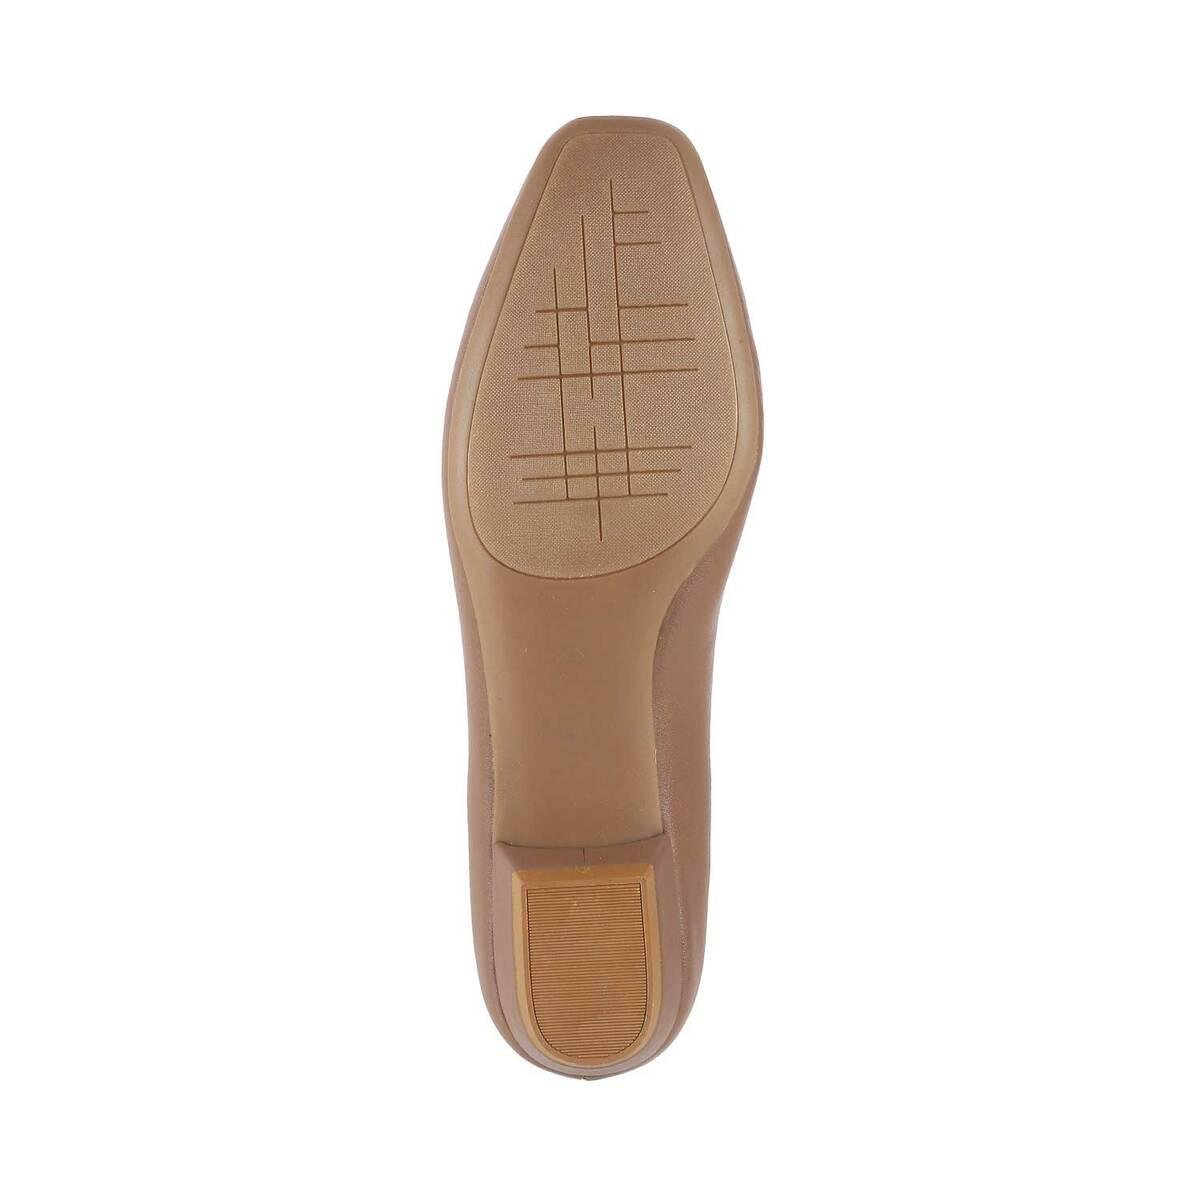 Buy Women Brown Formal Pumps Online | SKU: 31-9966-12-36-Metro Shoes